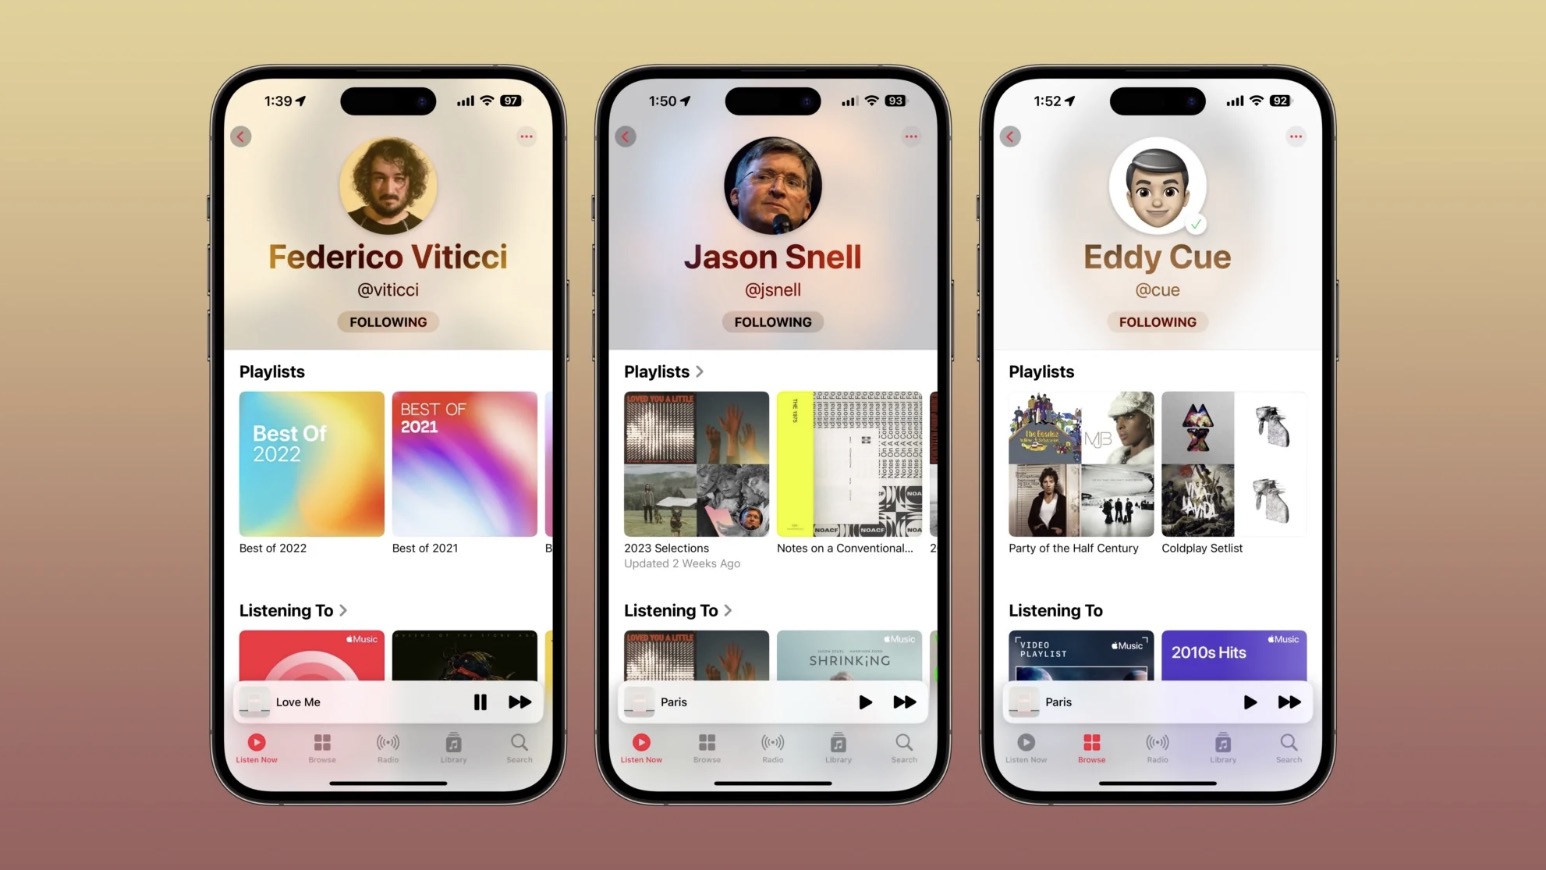 Czego słuchają Twoi znajomi? Poznaj ukrytą funkcję Apple Music w iOS 17 ciekawostki zwykli ludzie, wersja beta, Ukryta sieć społecznościowa, system operacyjny iOS 17, subskrybowanie, śledzenie muzyki, publiczne listy odtwarzania, prywatnosc, profil użytkownika, popularne serwisy muzyczne, ogólne playlisty, Odkrywanie Muzyki, iOS 17, funkcje mediów społecznościowych, fan Coldplay, Eddie Cue, Apple music  Użytkownicy, którzy zainstalowali wersję beta systemu iOS 17, odkryli funkcję, o której Apple milczy - ukrytą sieć społecznościową w Apple Music. AM 2